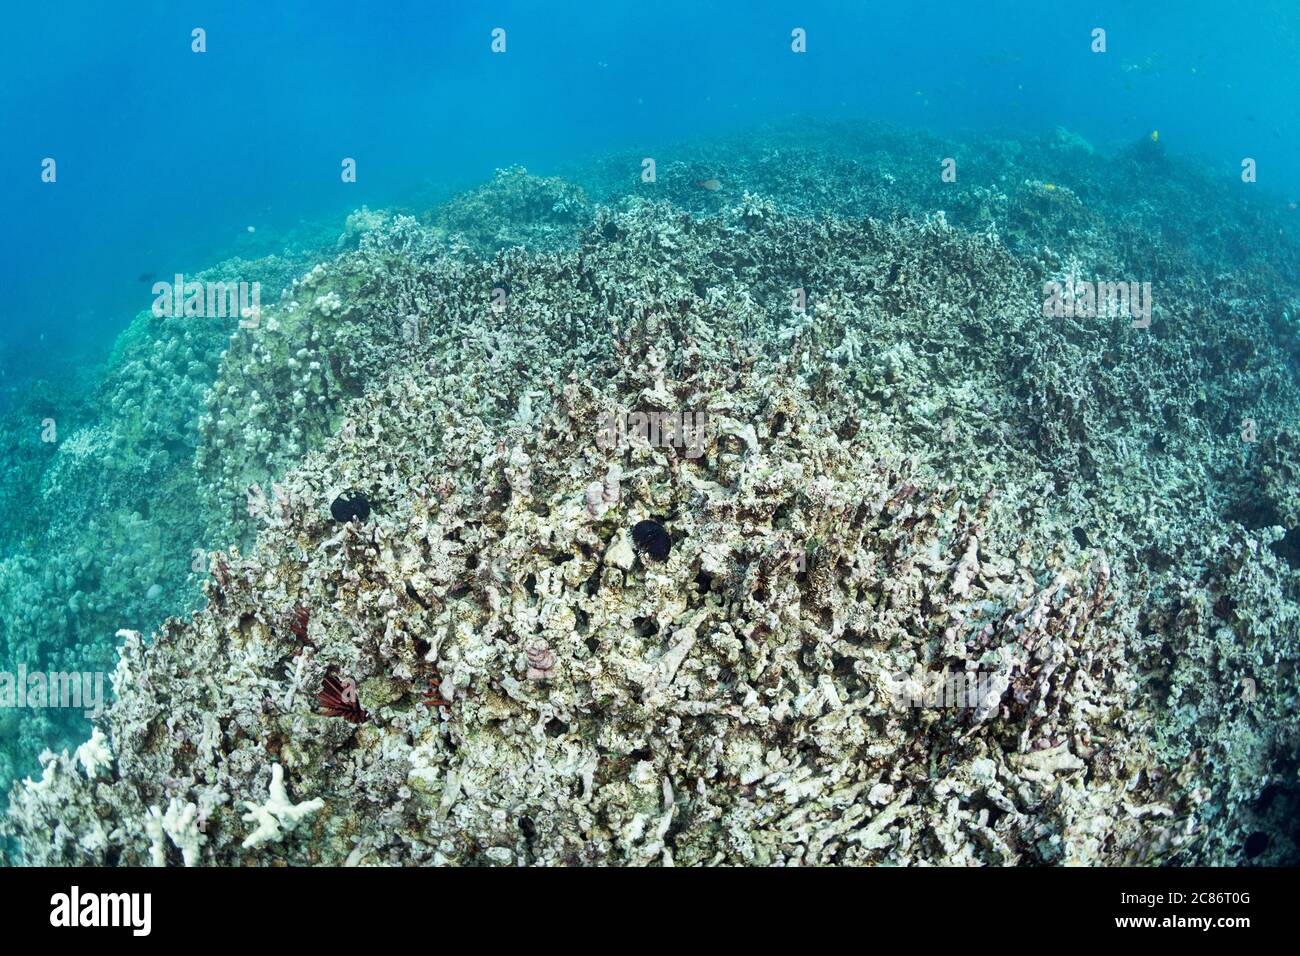 a field of broken coral rubble, where once there was a living reef, Honaunau Bay, aka Two Step, South Kona, Hawaii Island, the Big Island, Hawaii, USA Stock Photo